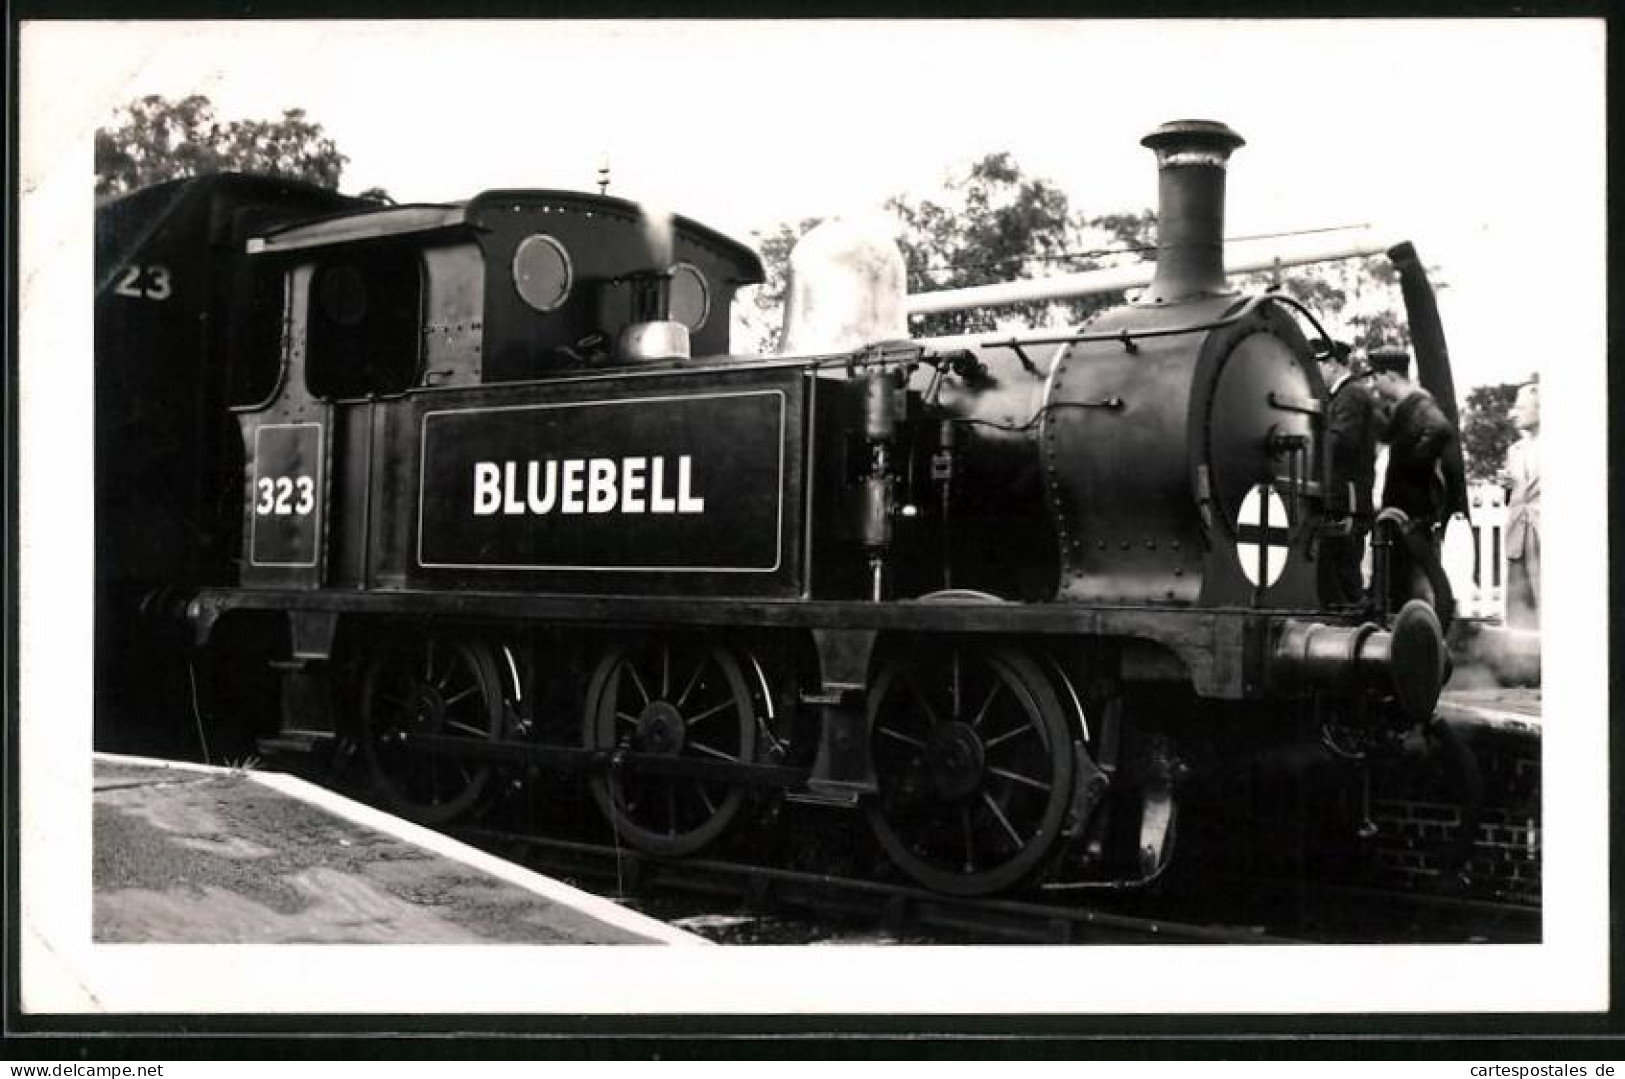 Fotografie Britische Eisenbahn, Dampflok, Lokomotive Bluebell Nr. 323  - Treni